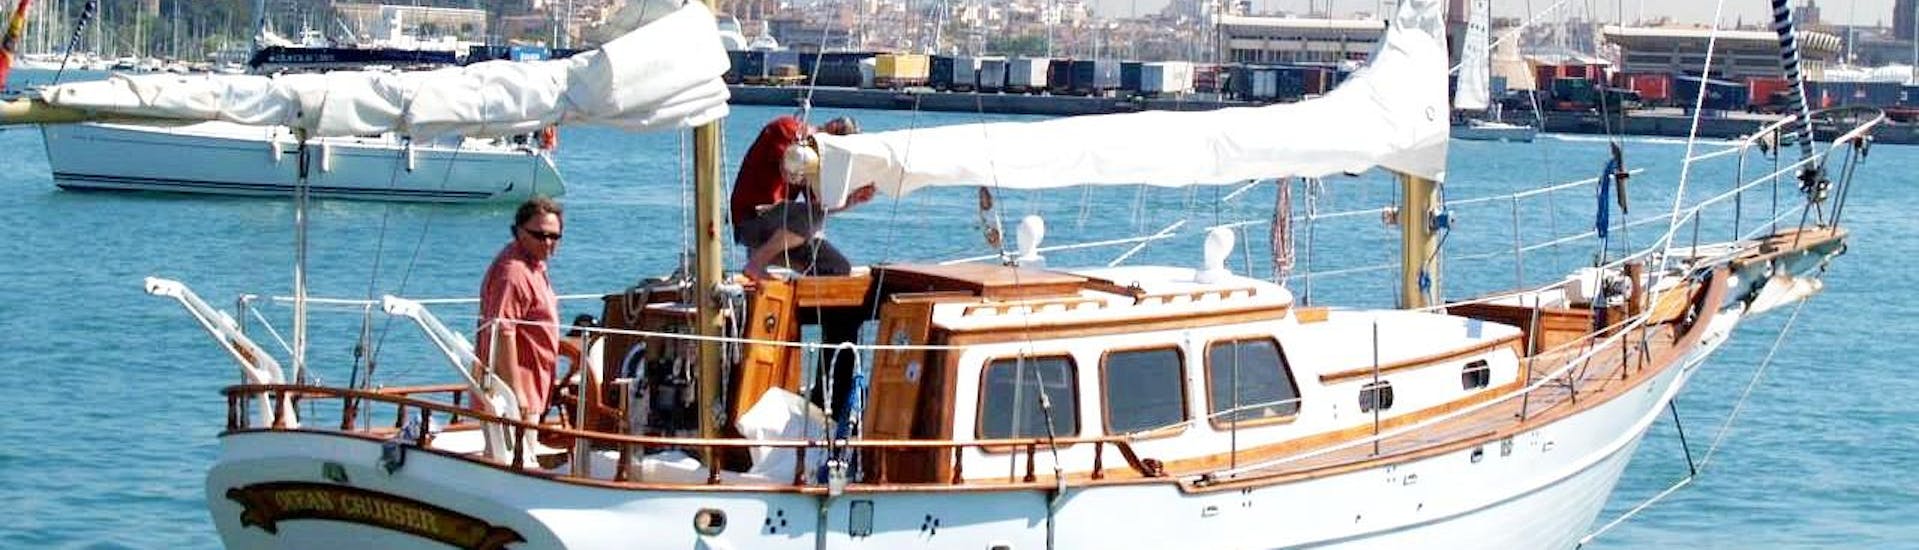 El histórico Ocean Cruiser inicia un viaje en barco en la Costa del Sol por el Mediterráneo con Ocean Cruiser.